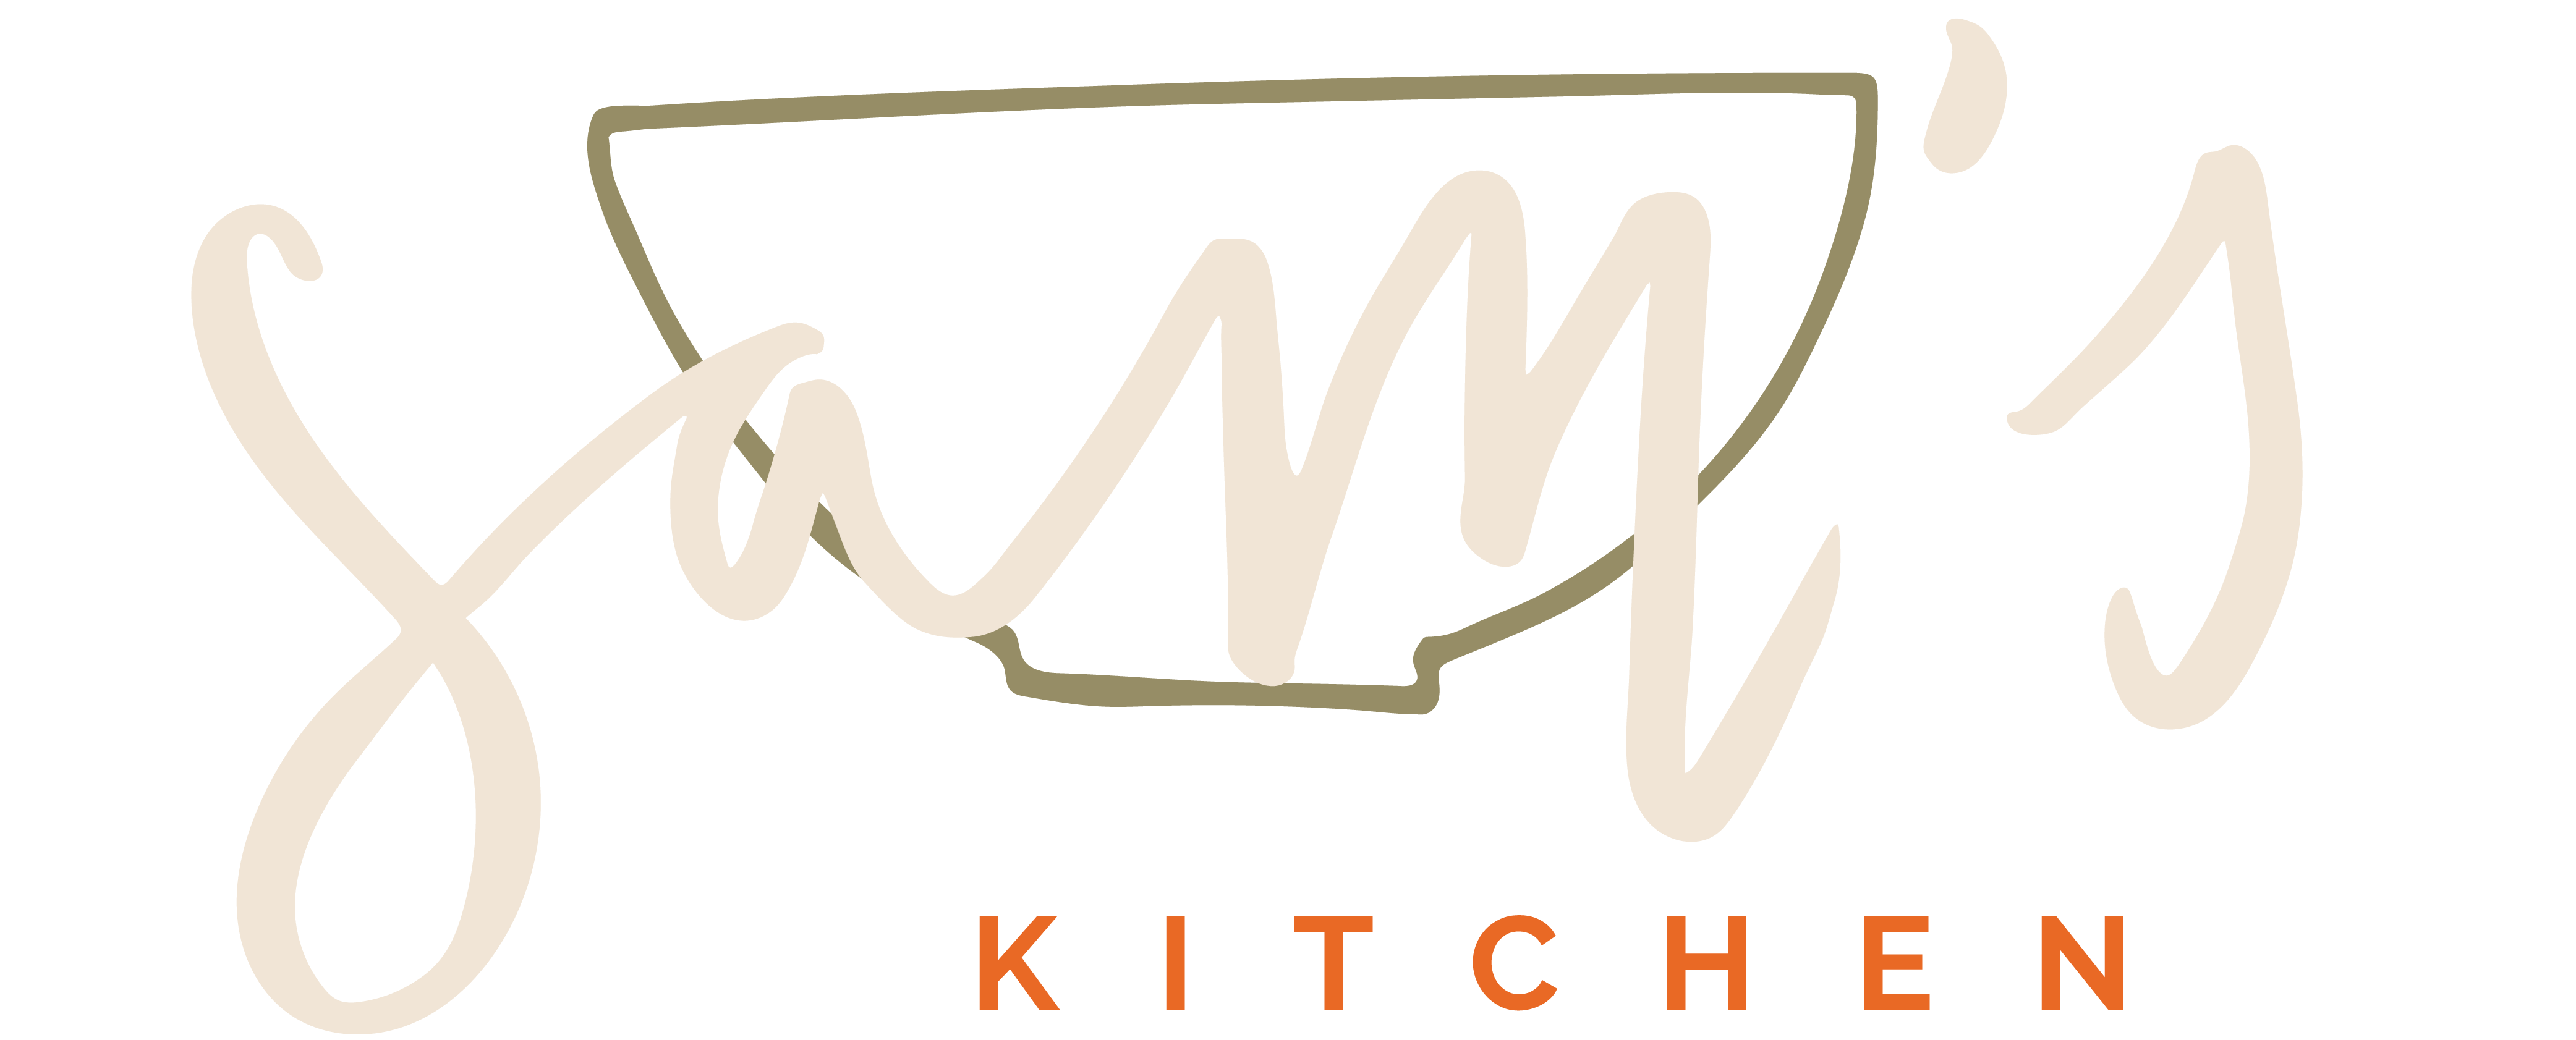 Sam's Kitchen logo